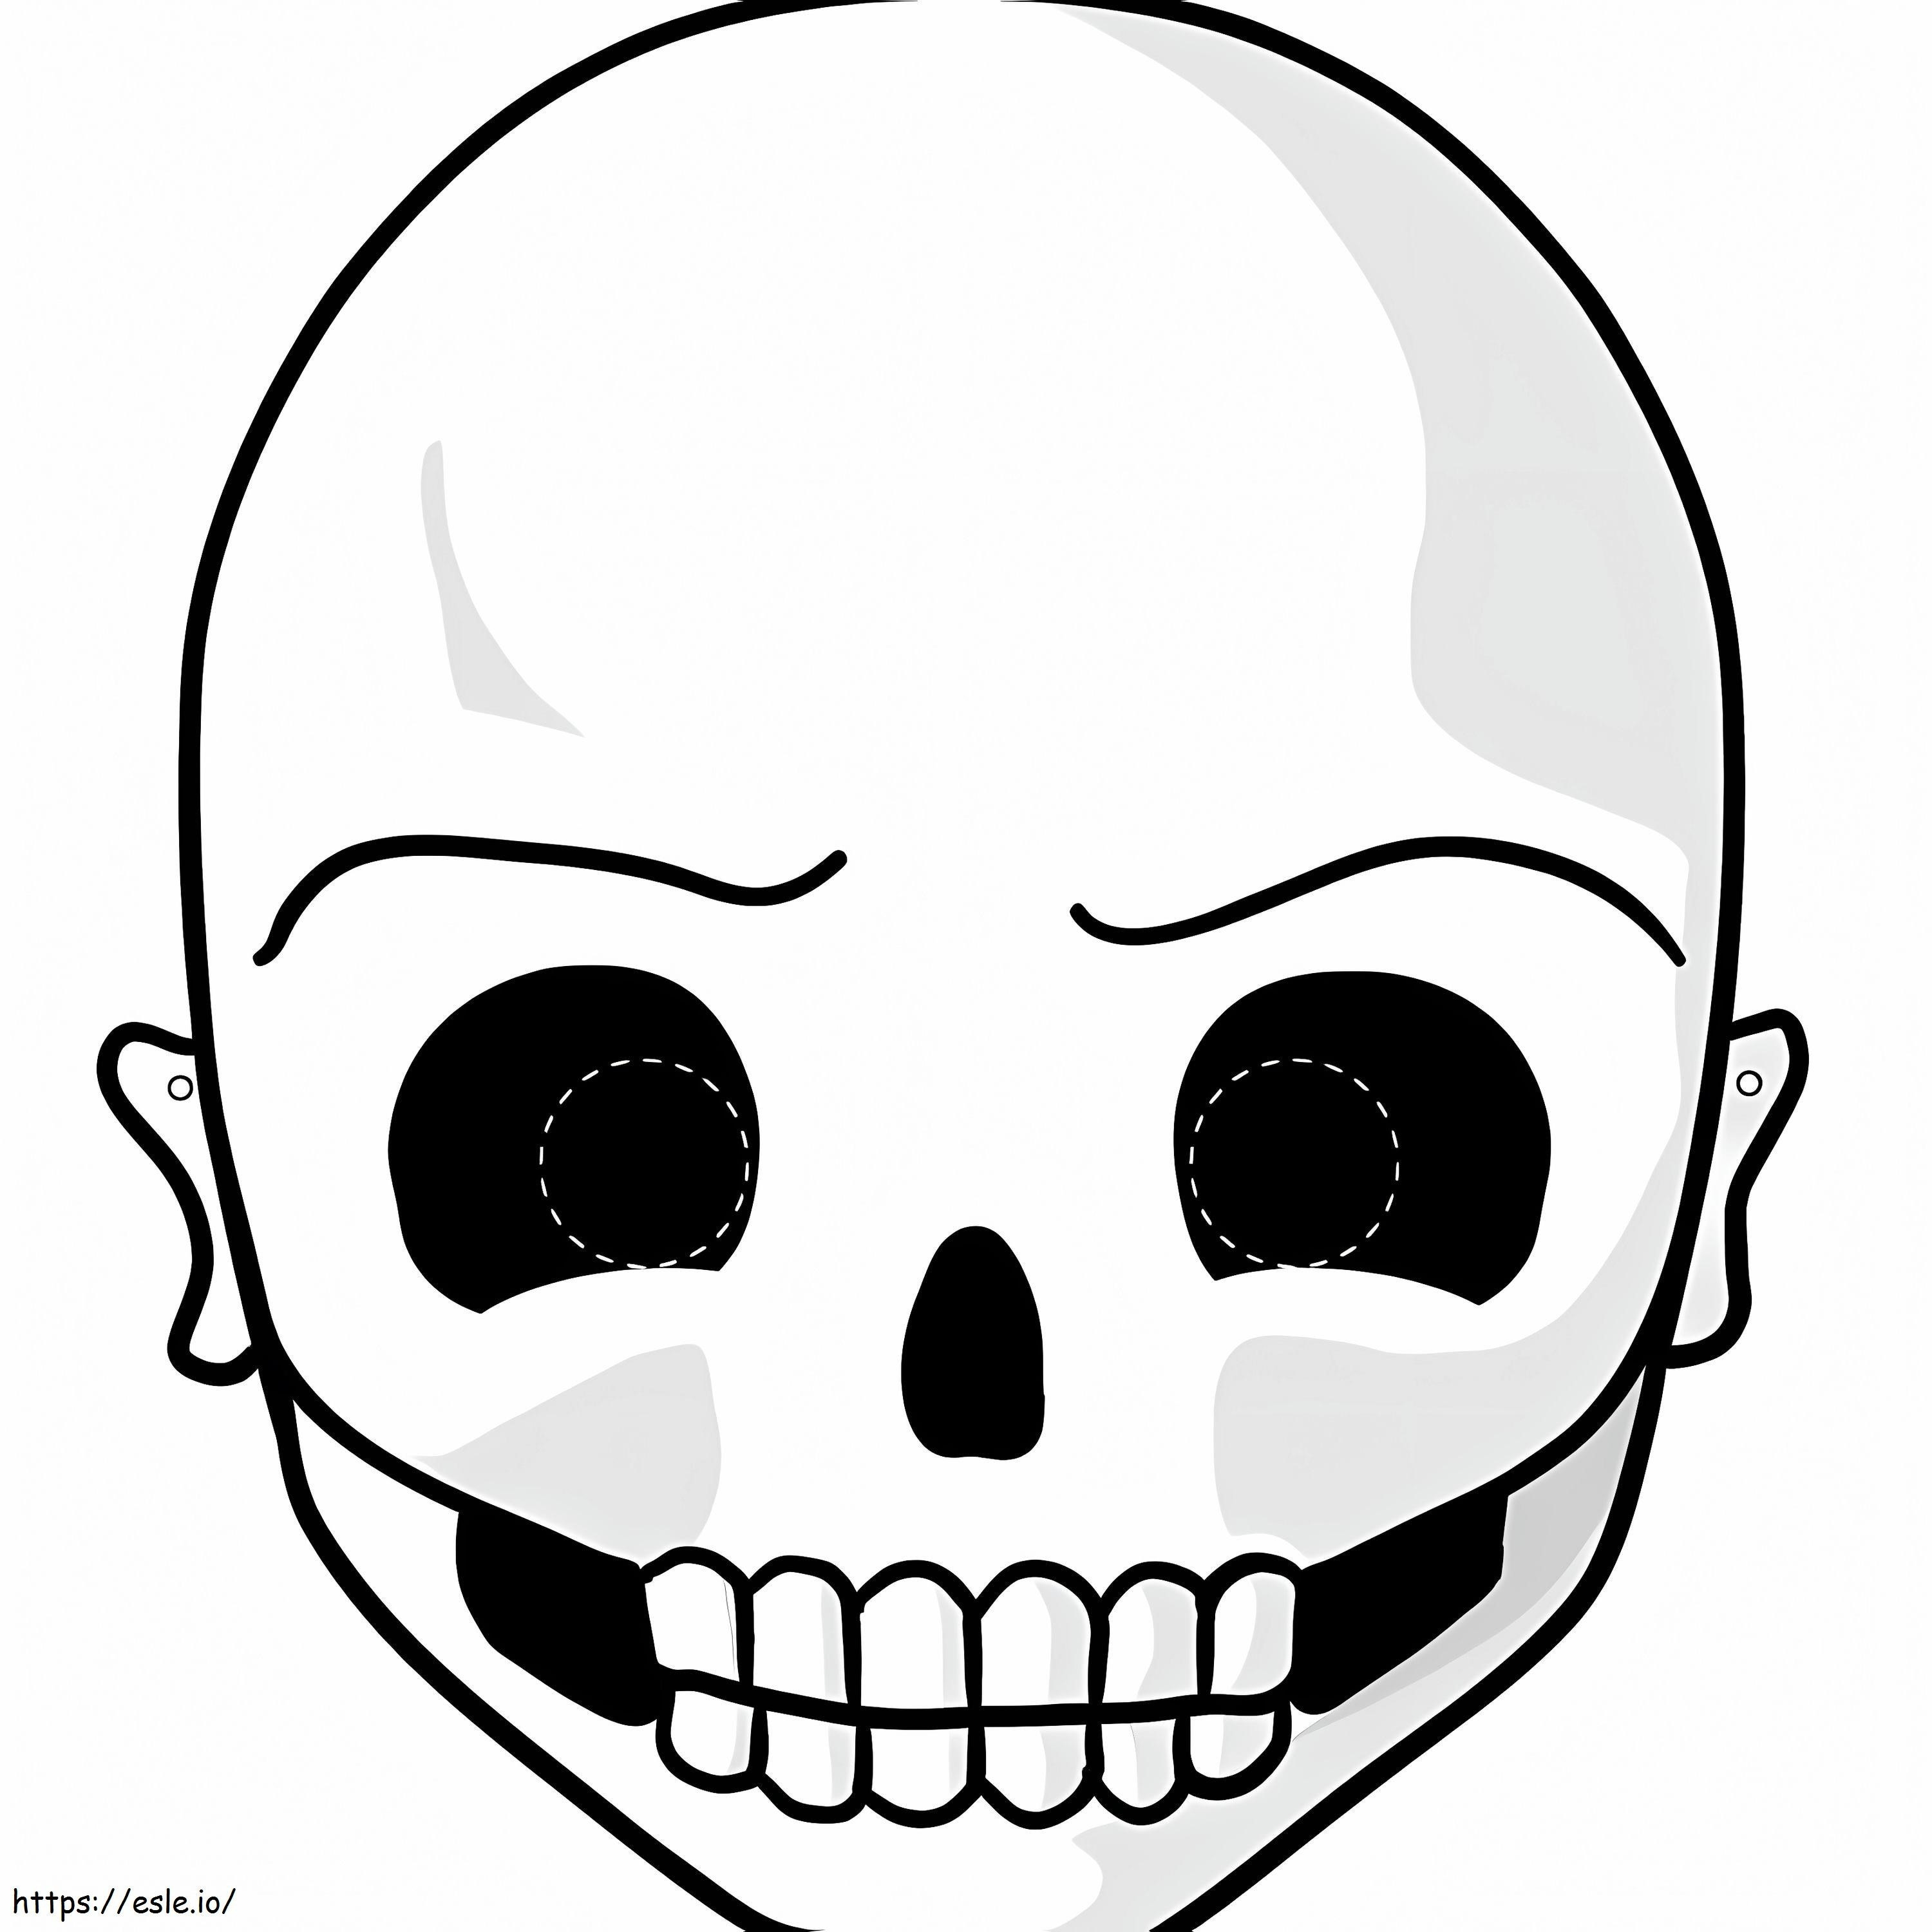 Máscara de esqueleto para colorear